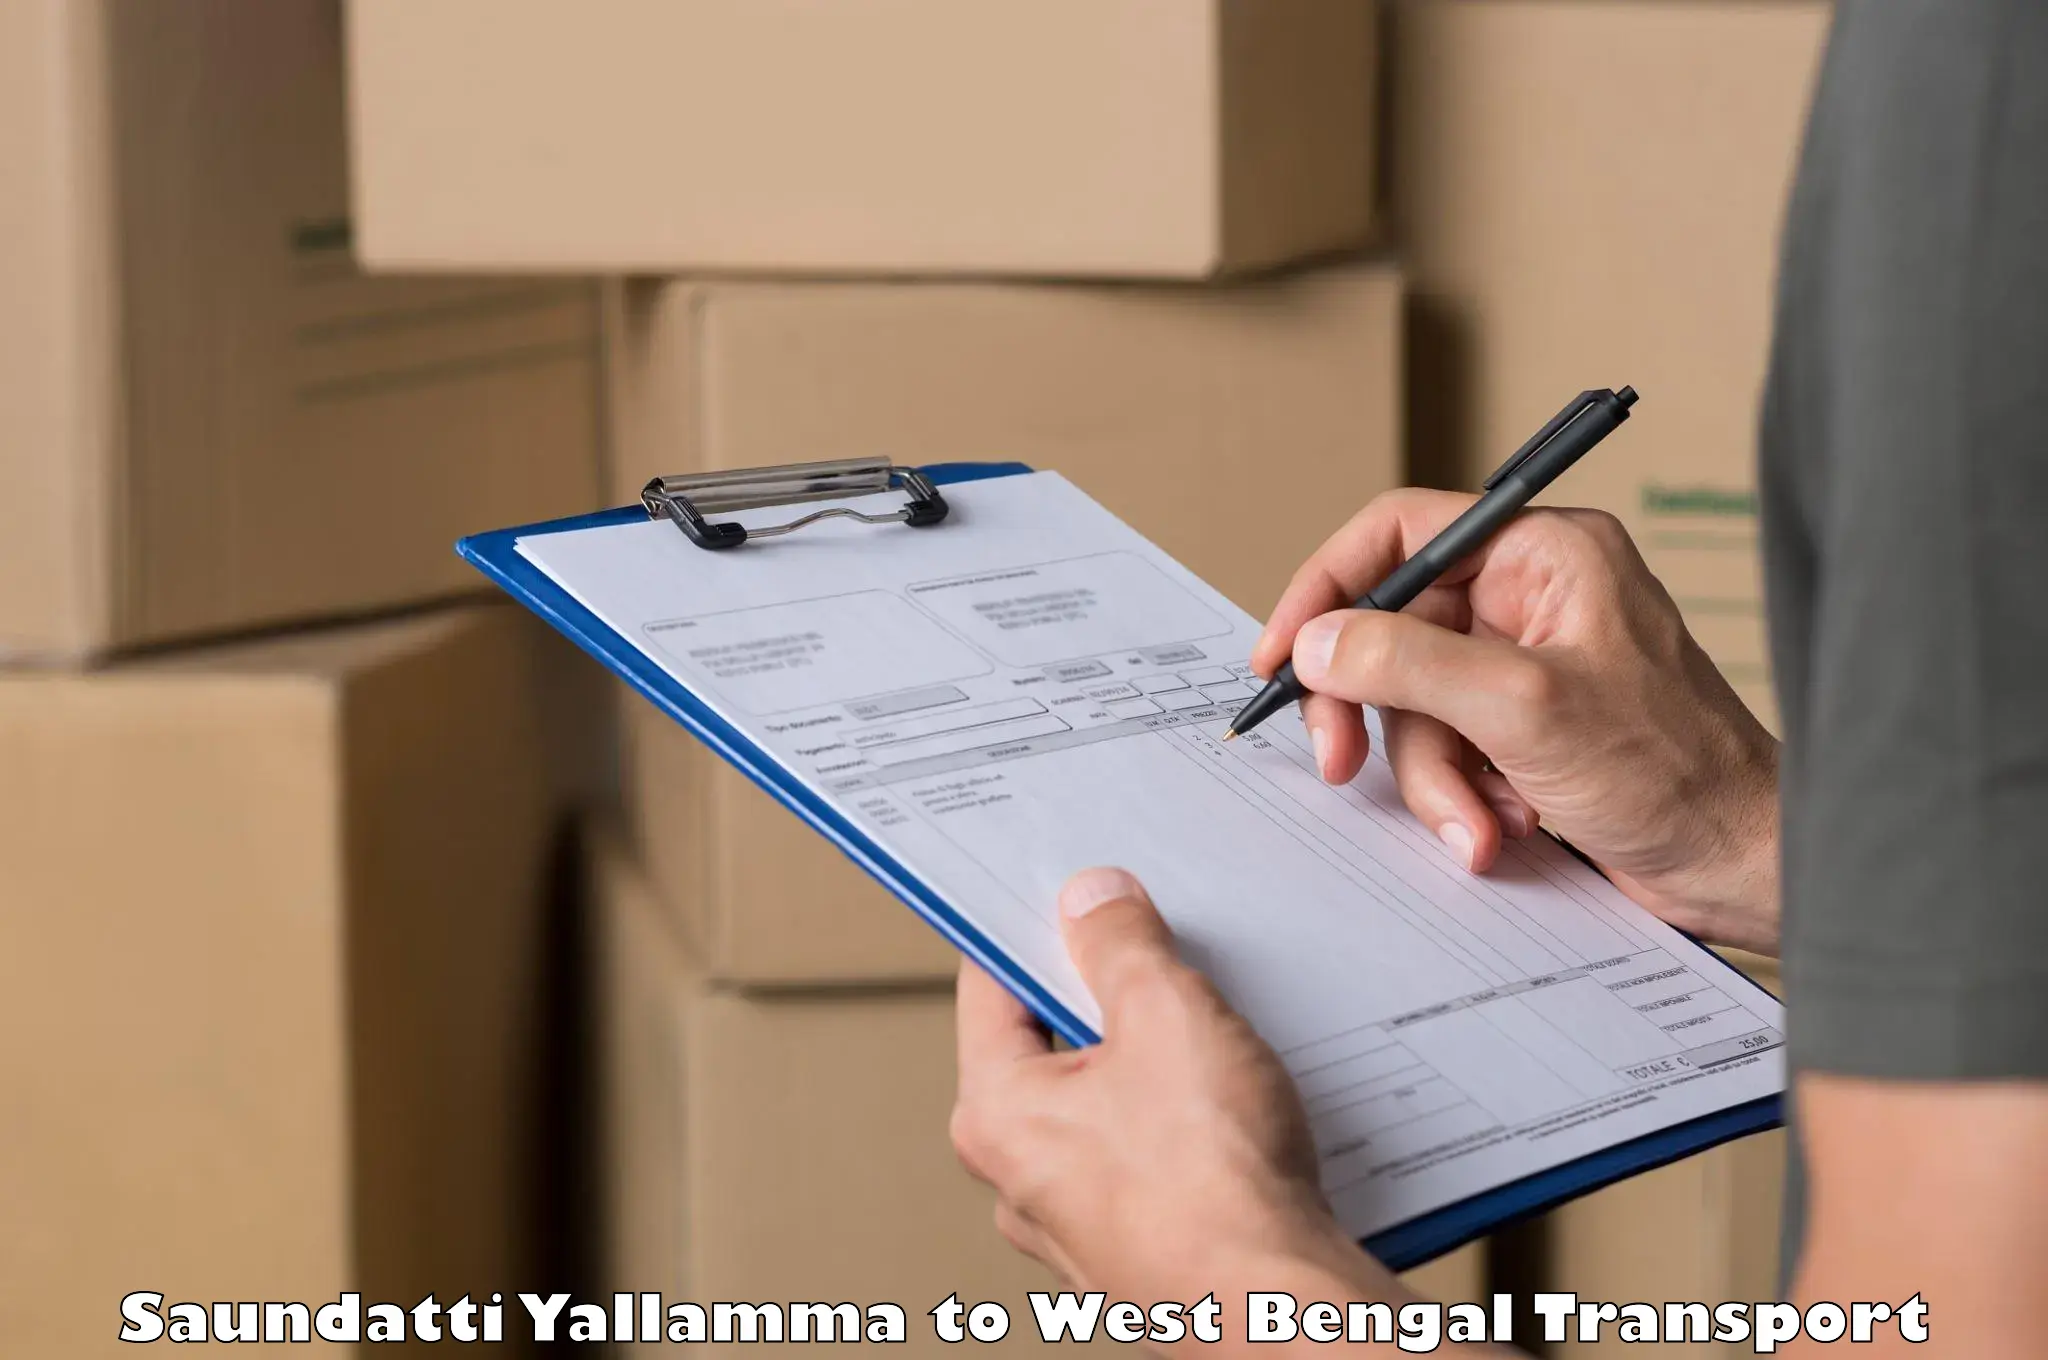 Truck transport companies in India Saundatti Yallamma to Jalpaiguri